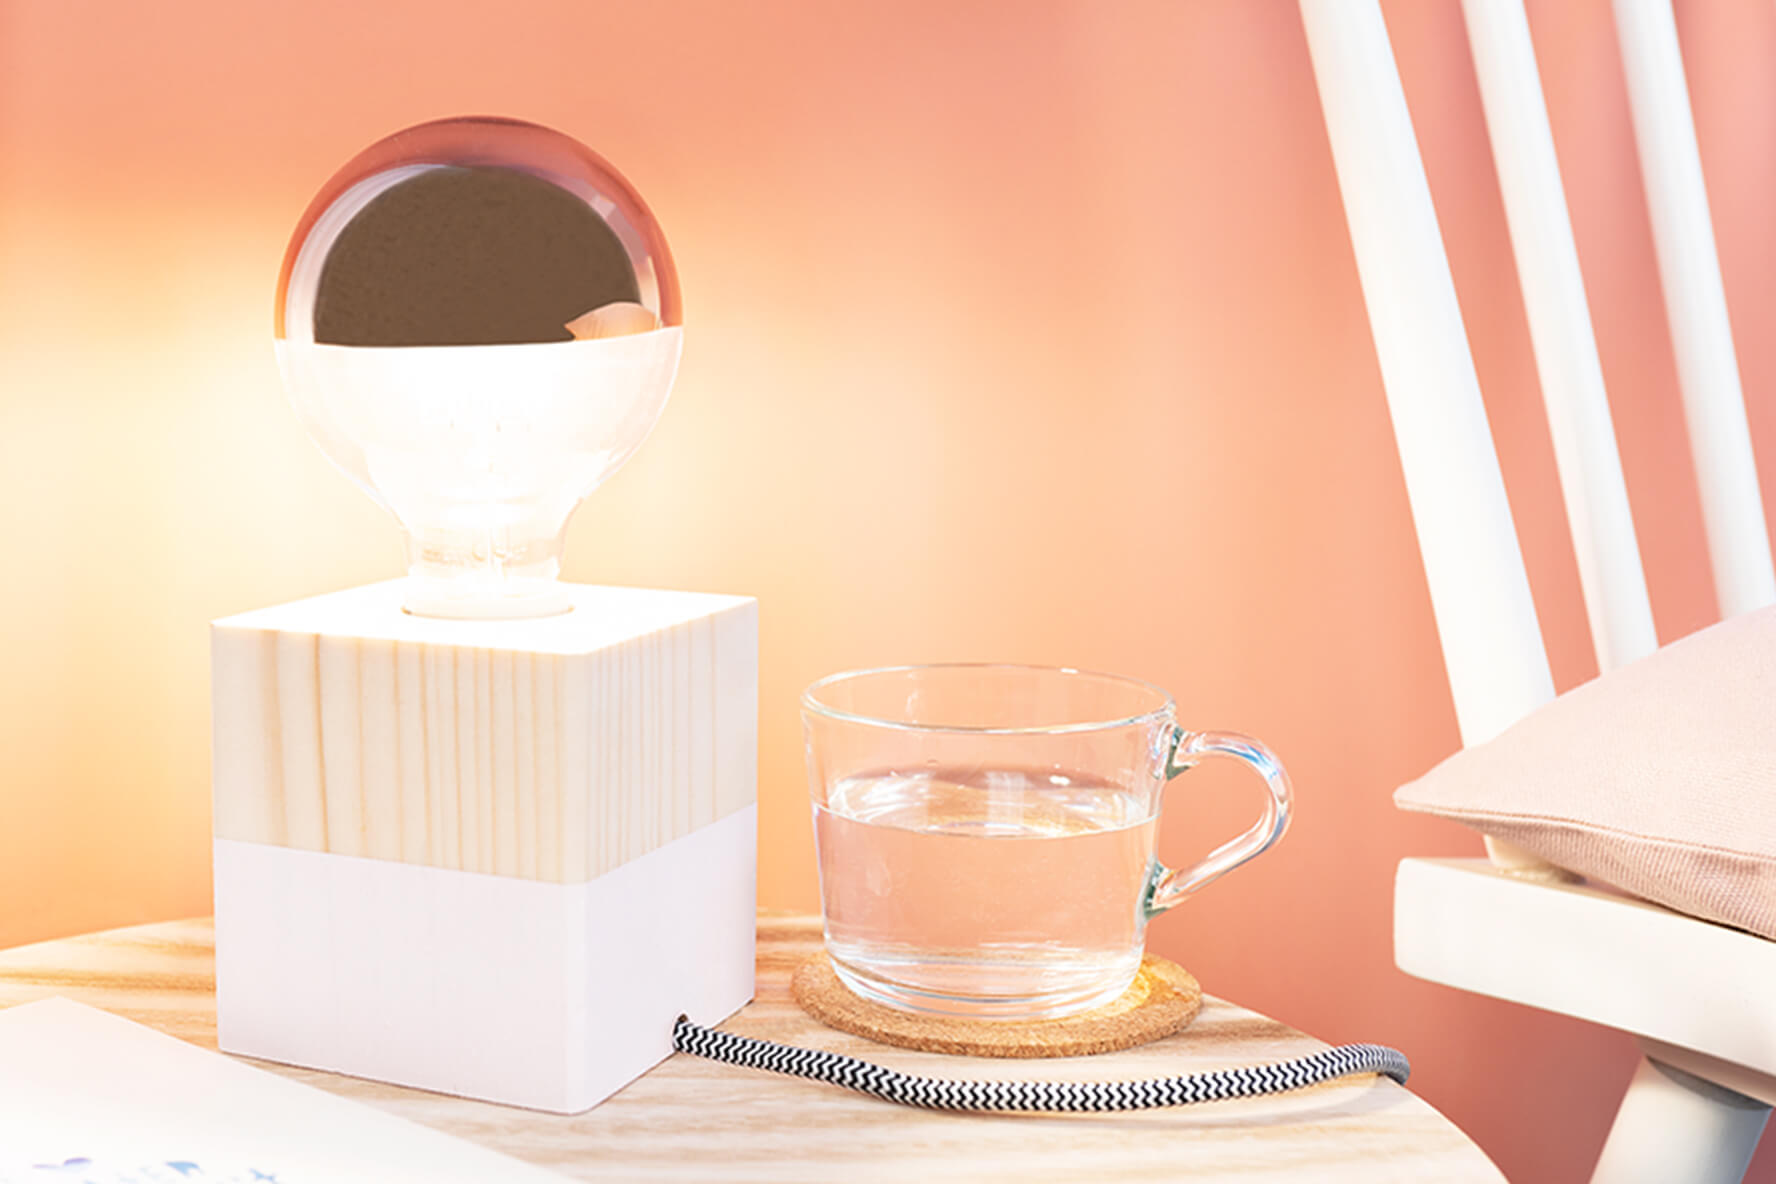 Lampe selber bauen – zu für Hause | Tipps und OBI Ideen